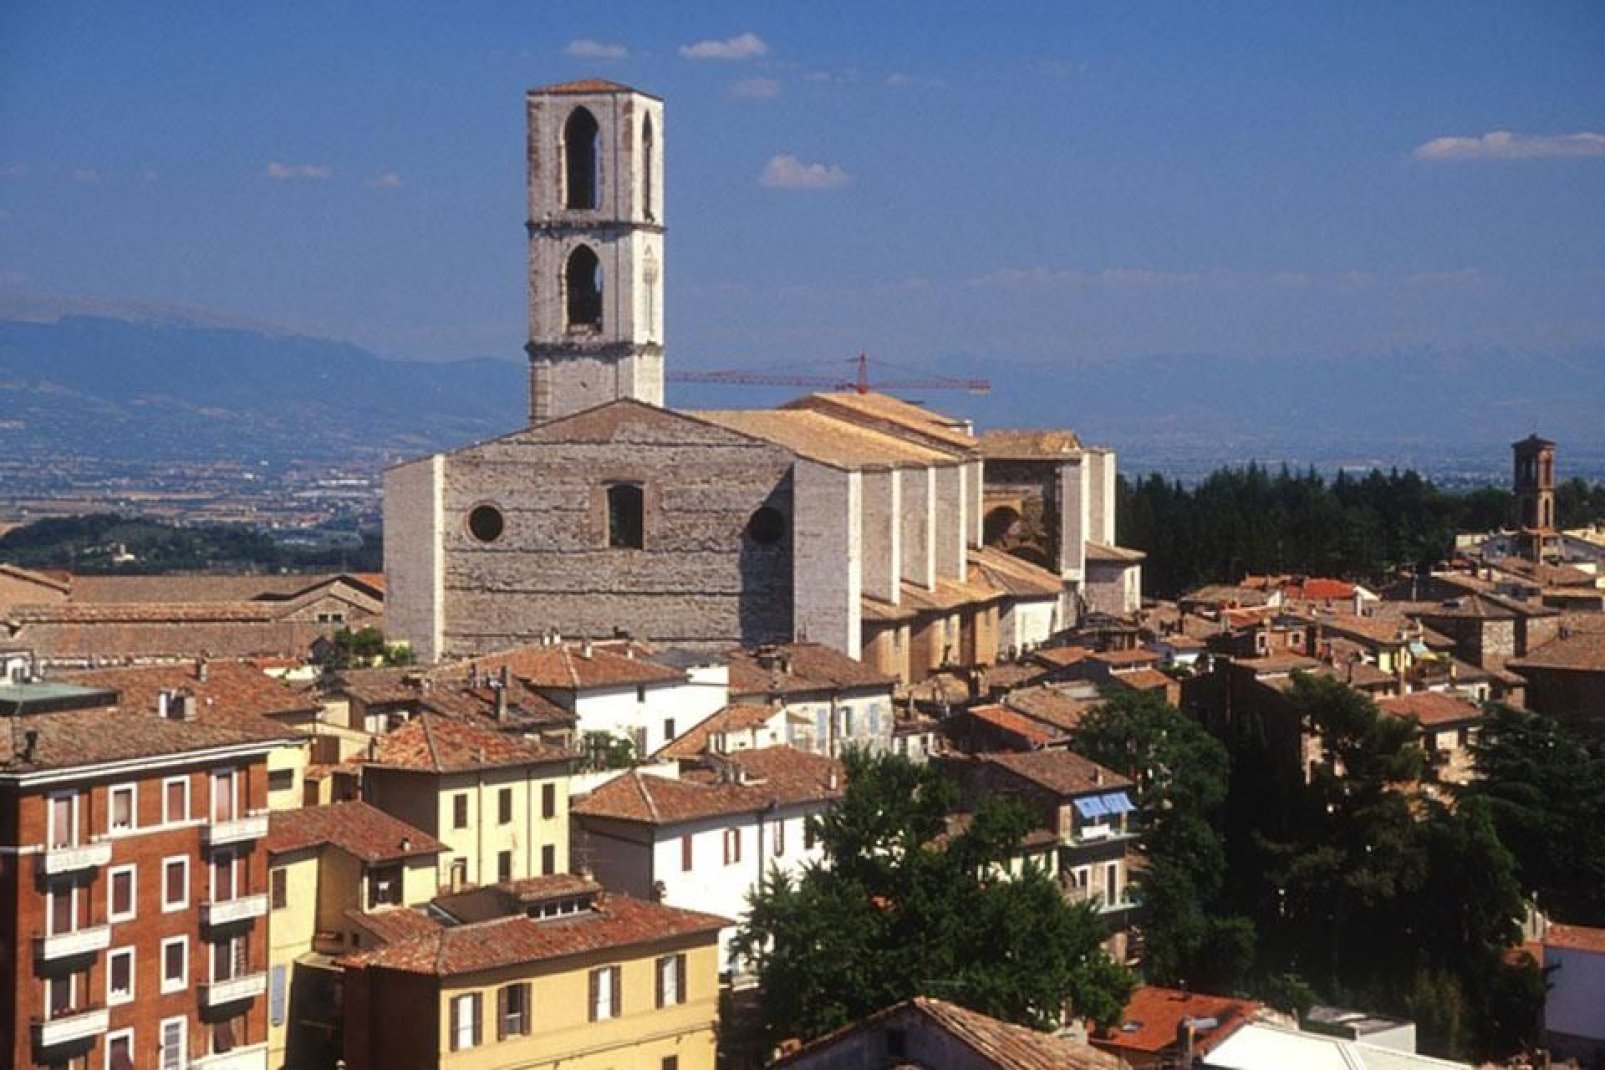 Perugia, capital de Umbría, es una ciudad llena de arte, historia y monumentos.